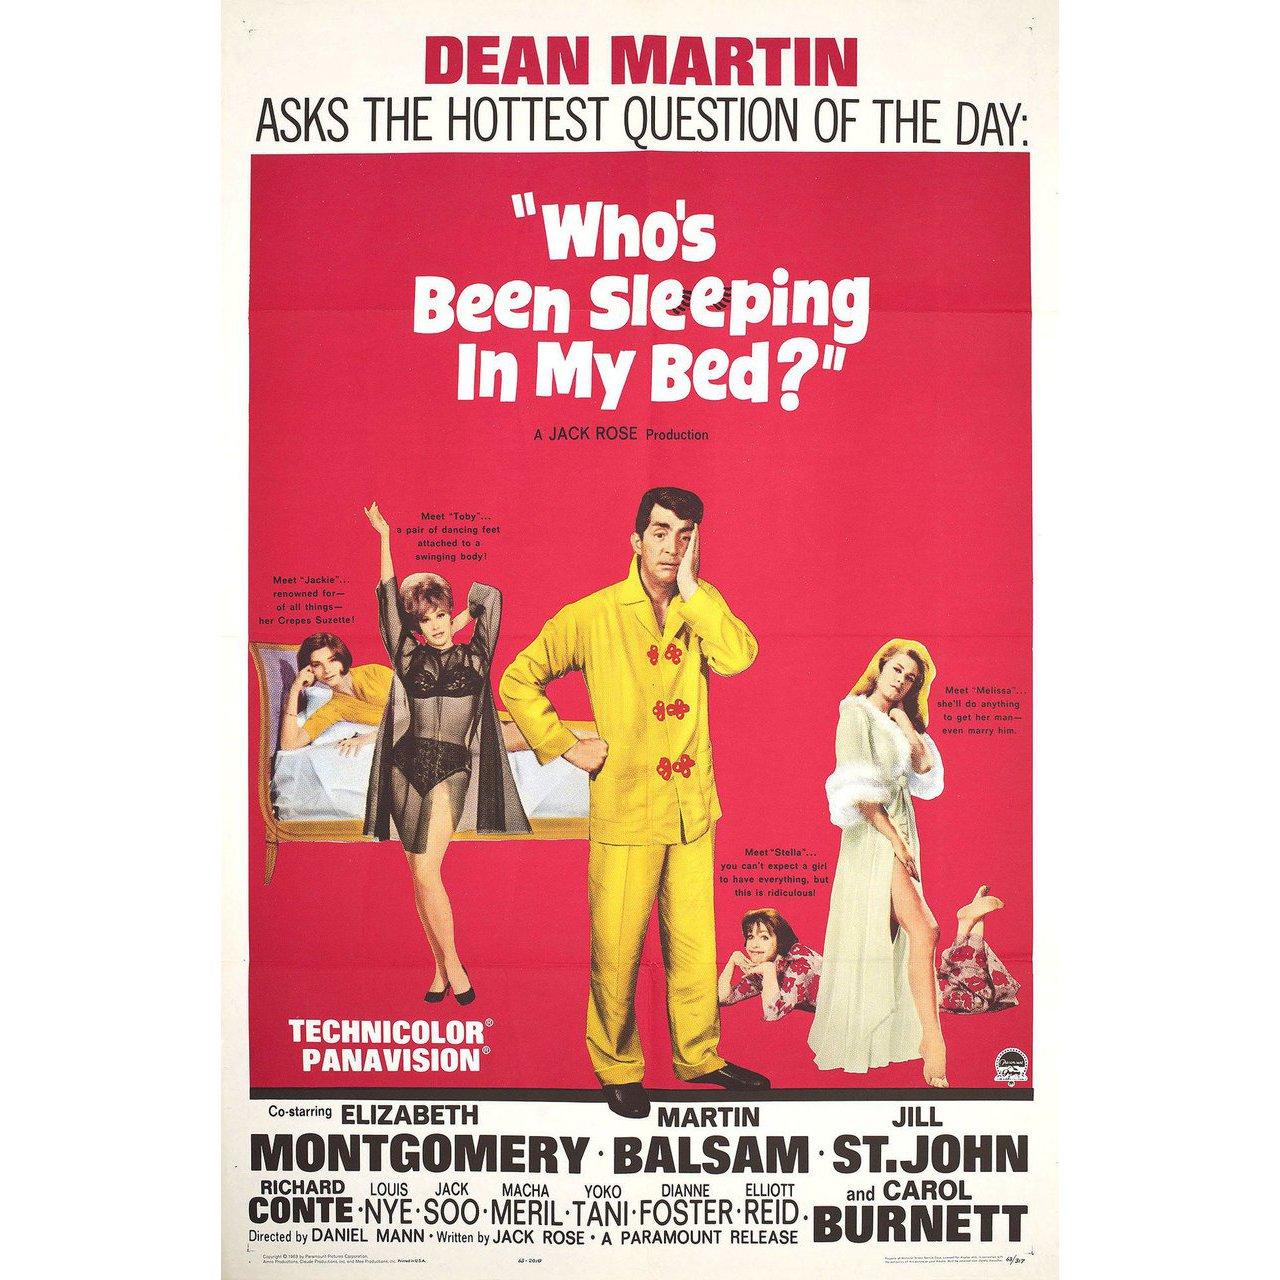 Originalplakat von 1963 für den Film Who's Been Sleeping in My Bed? unter der Regie von Daniel Mann mit Dean Martin / Elizabeth Montgomery / Martin Balsam / Jill St. John. Guter Zustand, gefaltet. Viele Originalplakate wurden gefaltet herausgegeben